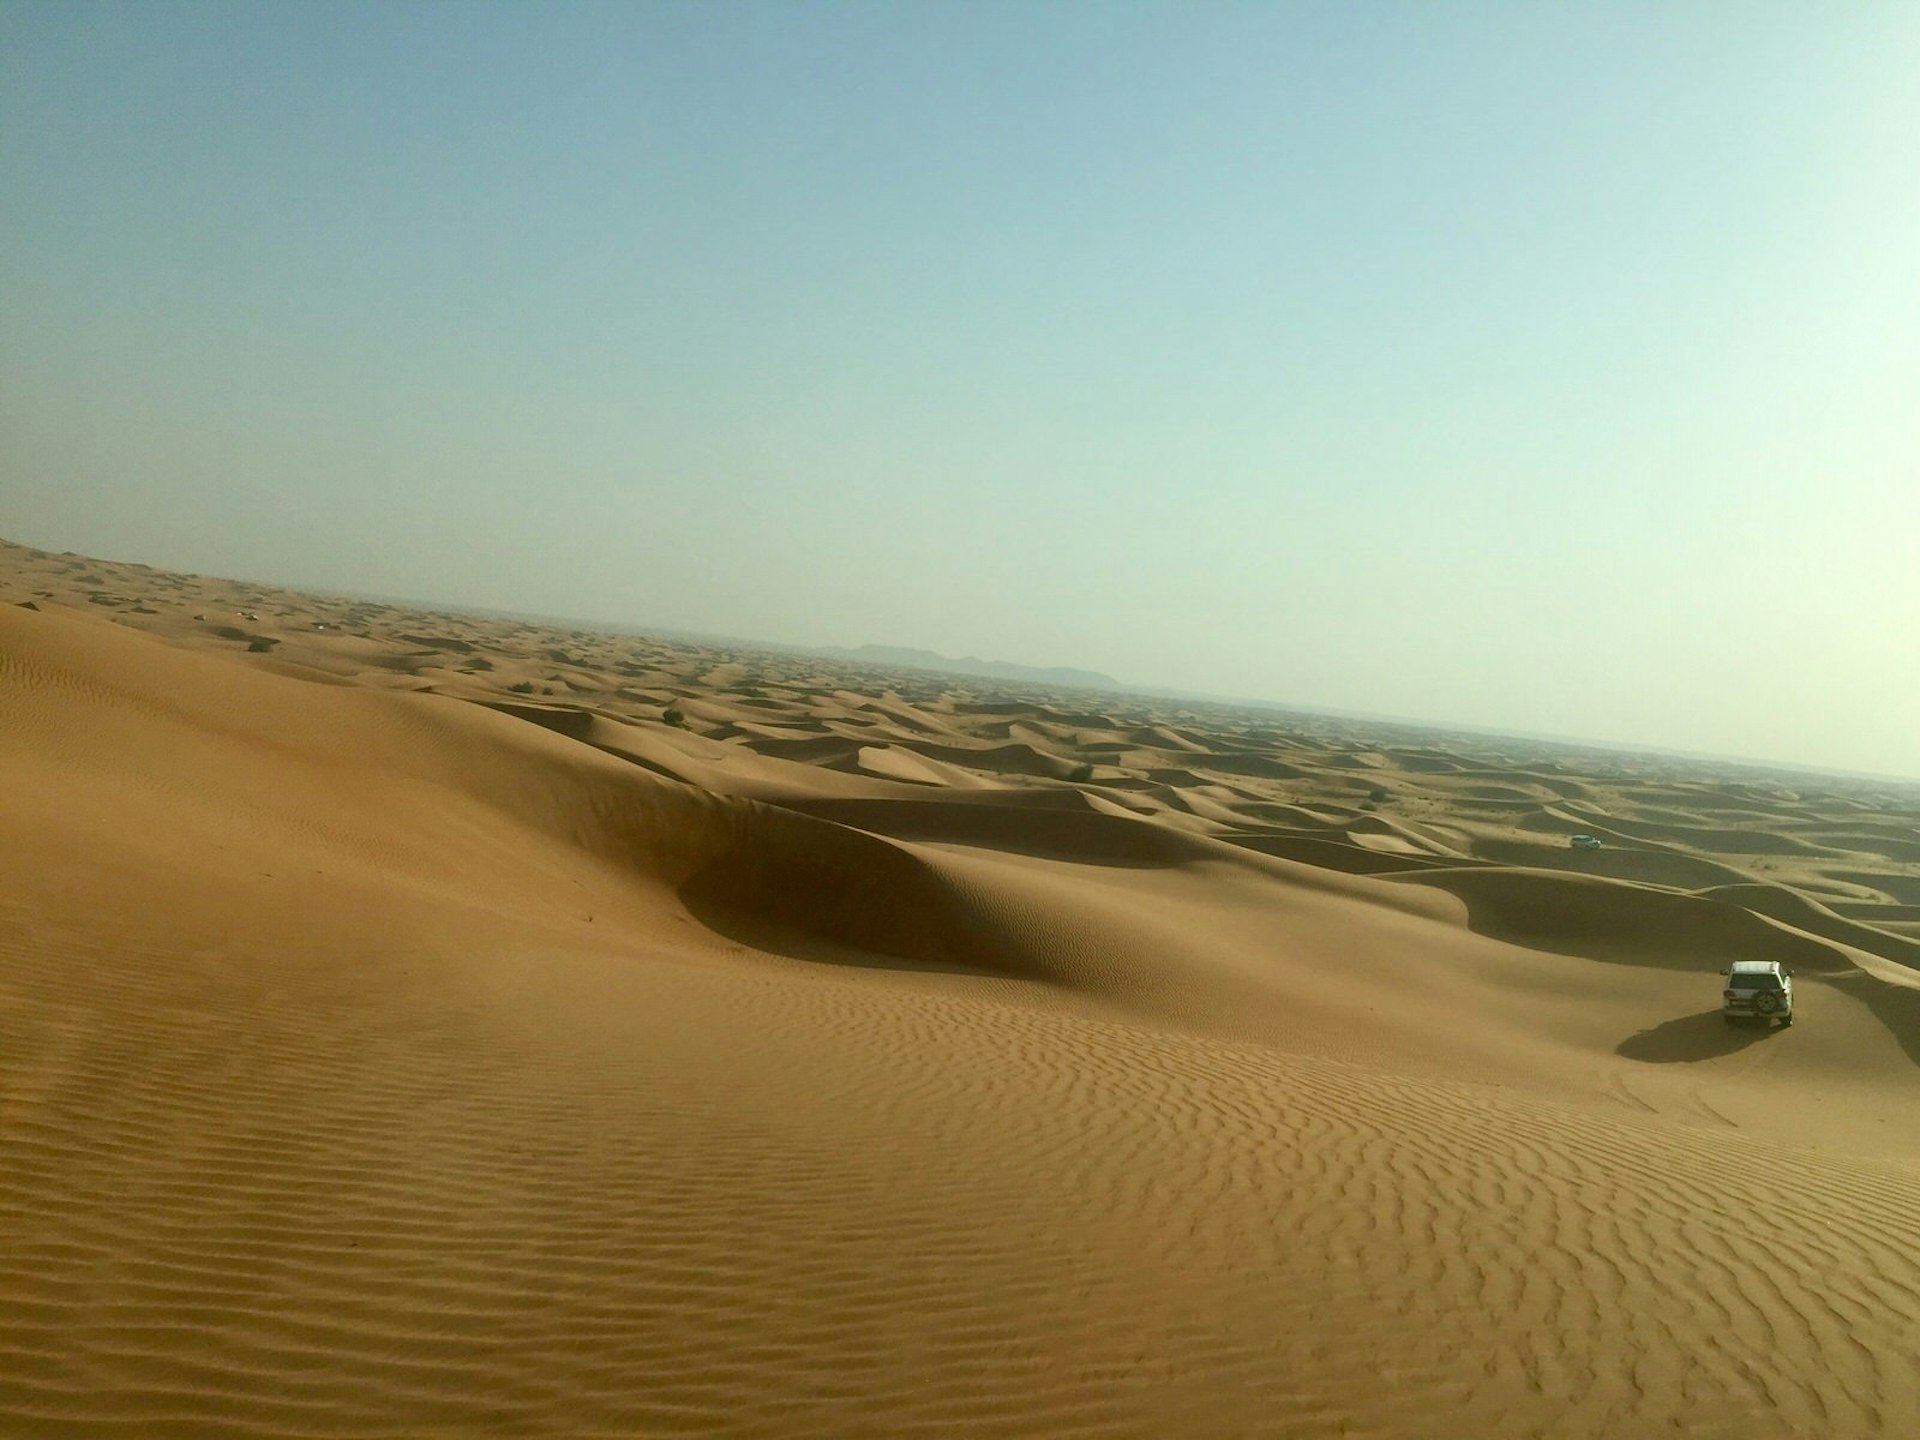 Driving through the desert sand dunes outside Dubai, United Arab Emirates